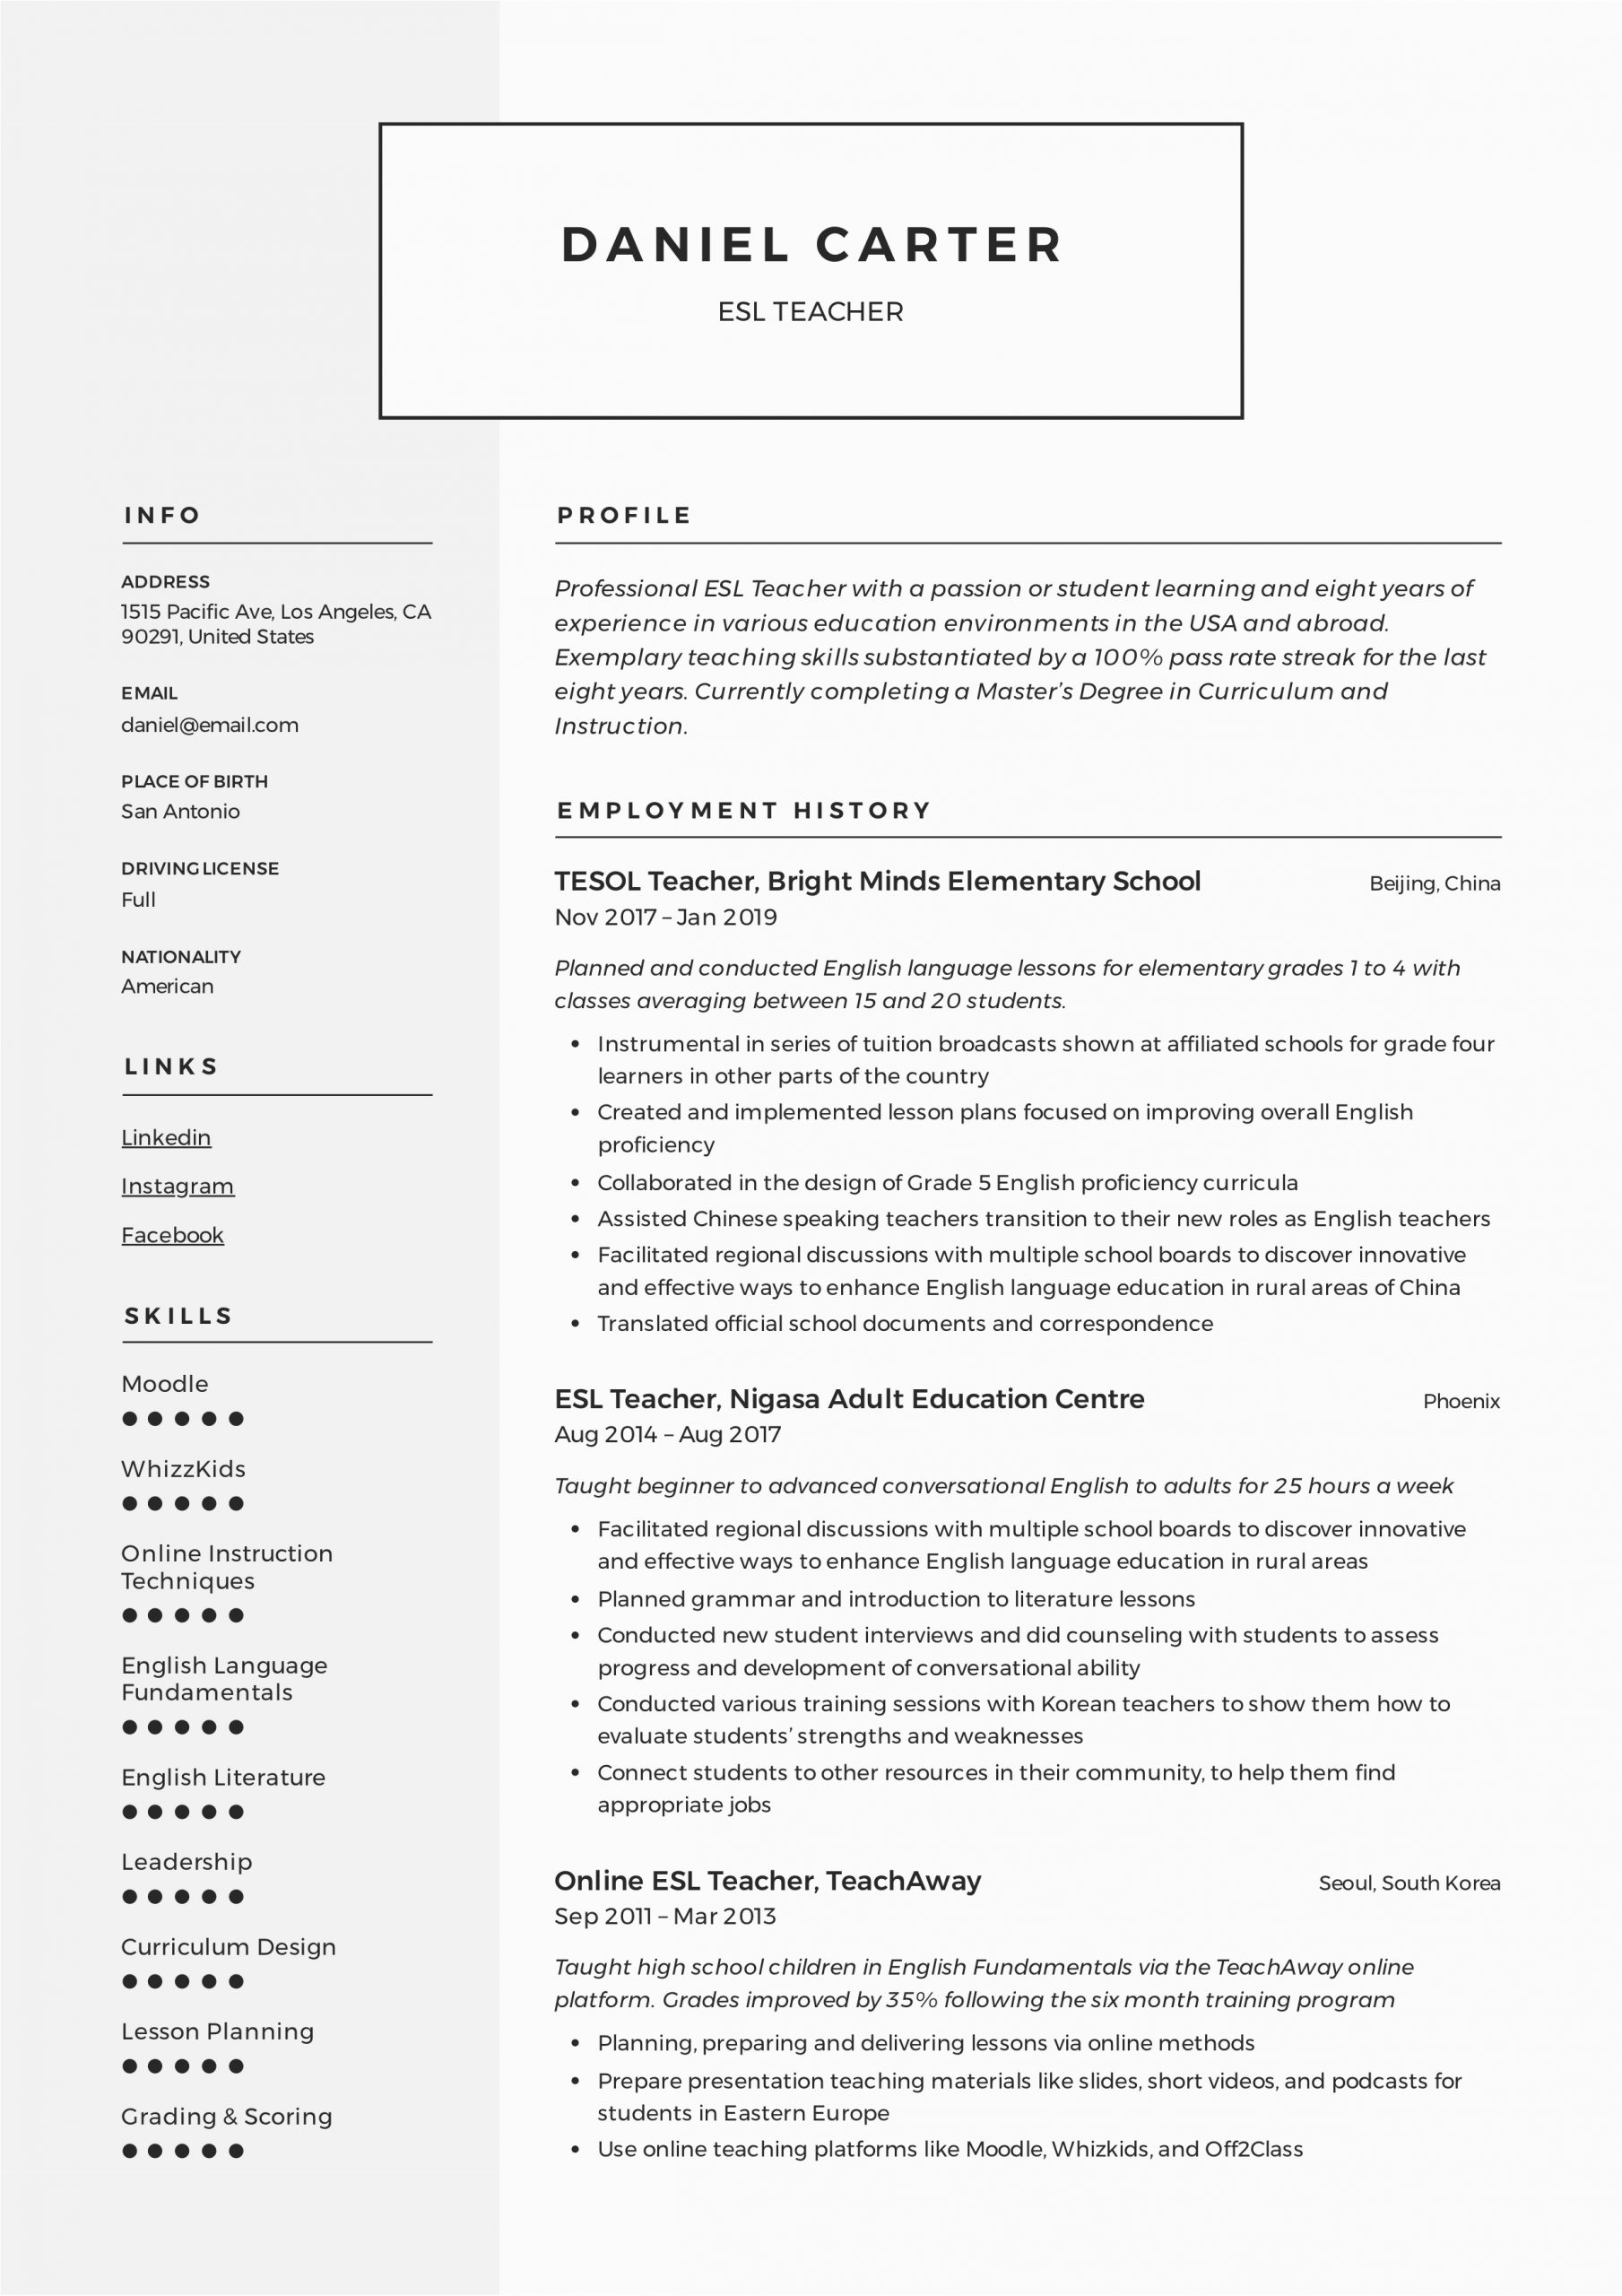 Sample Resume for Online Esl Teacher Esl Teacher Resume Sample & Writing Guide